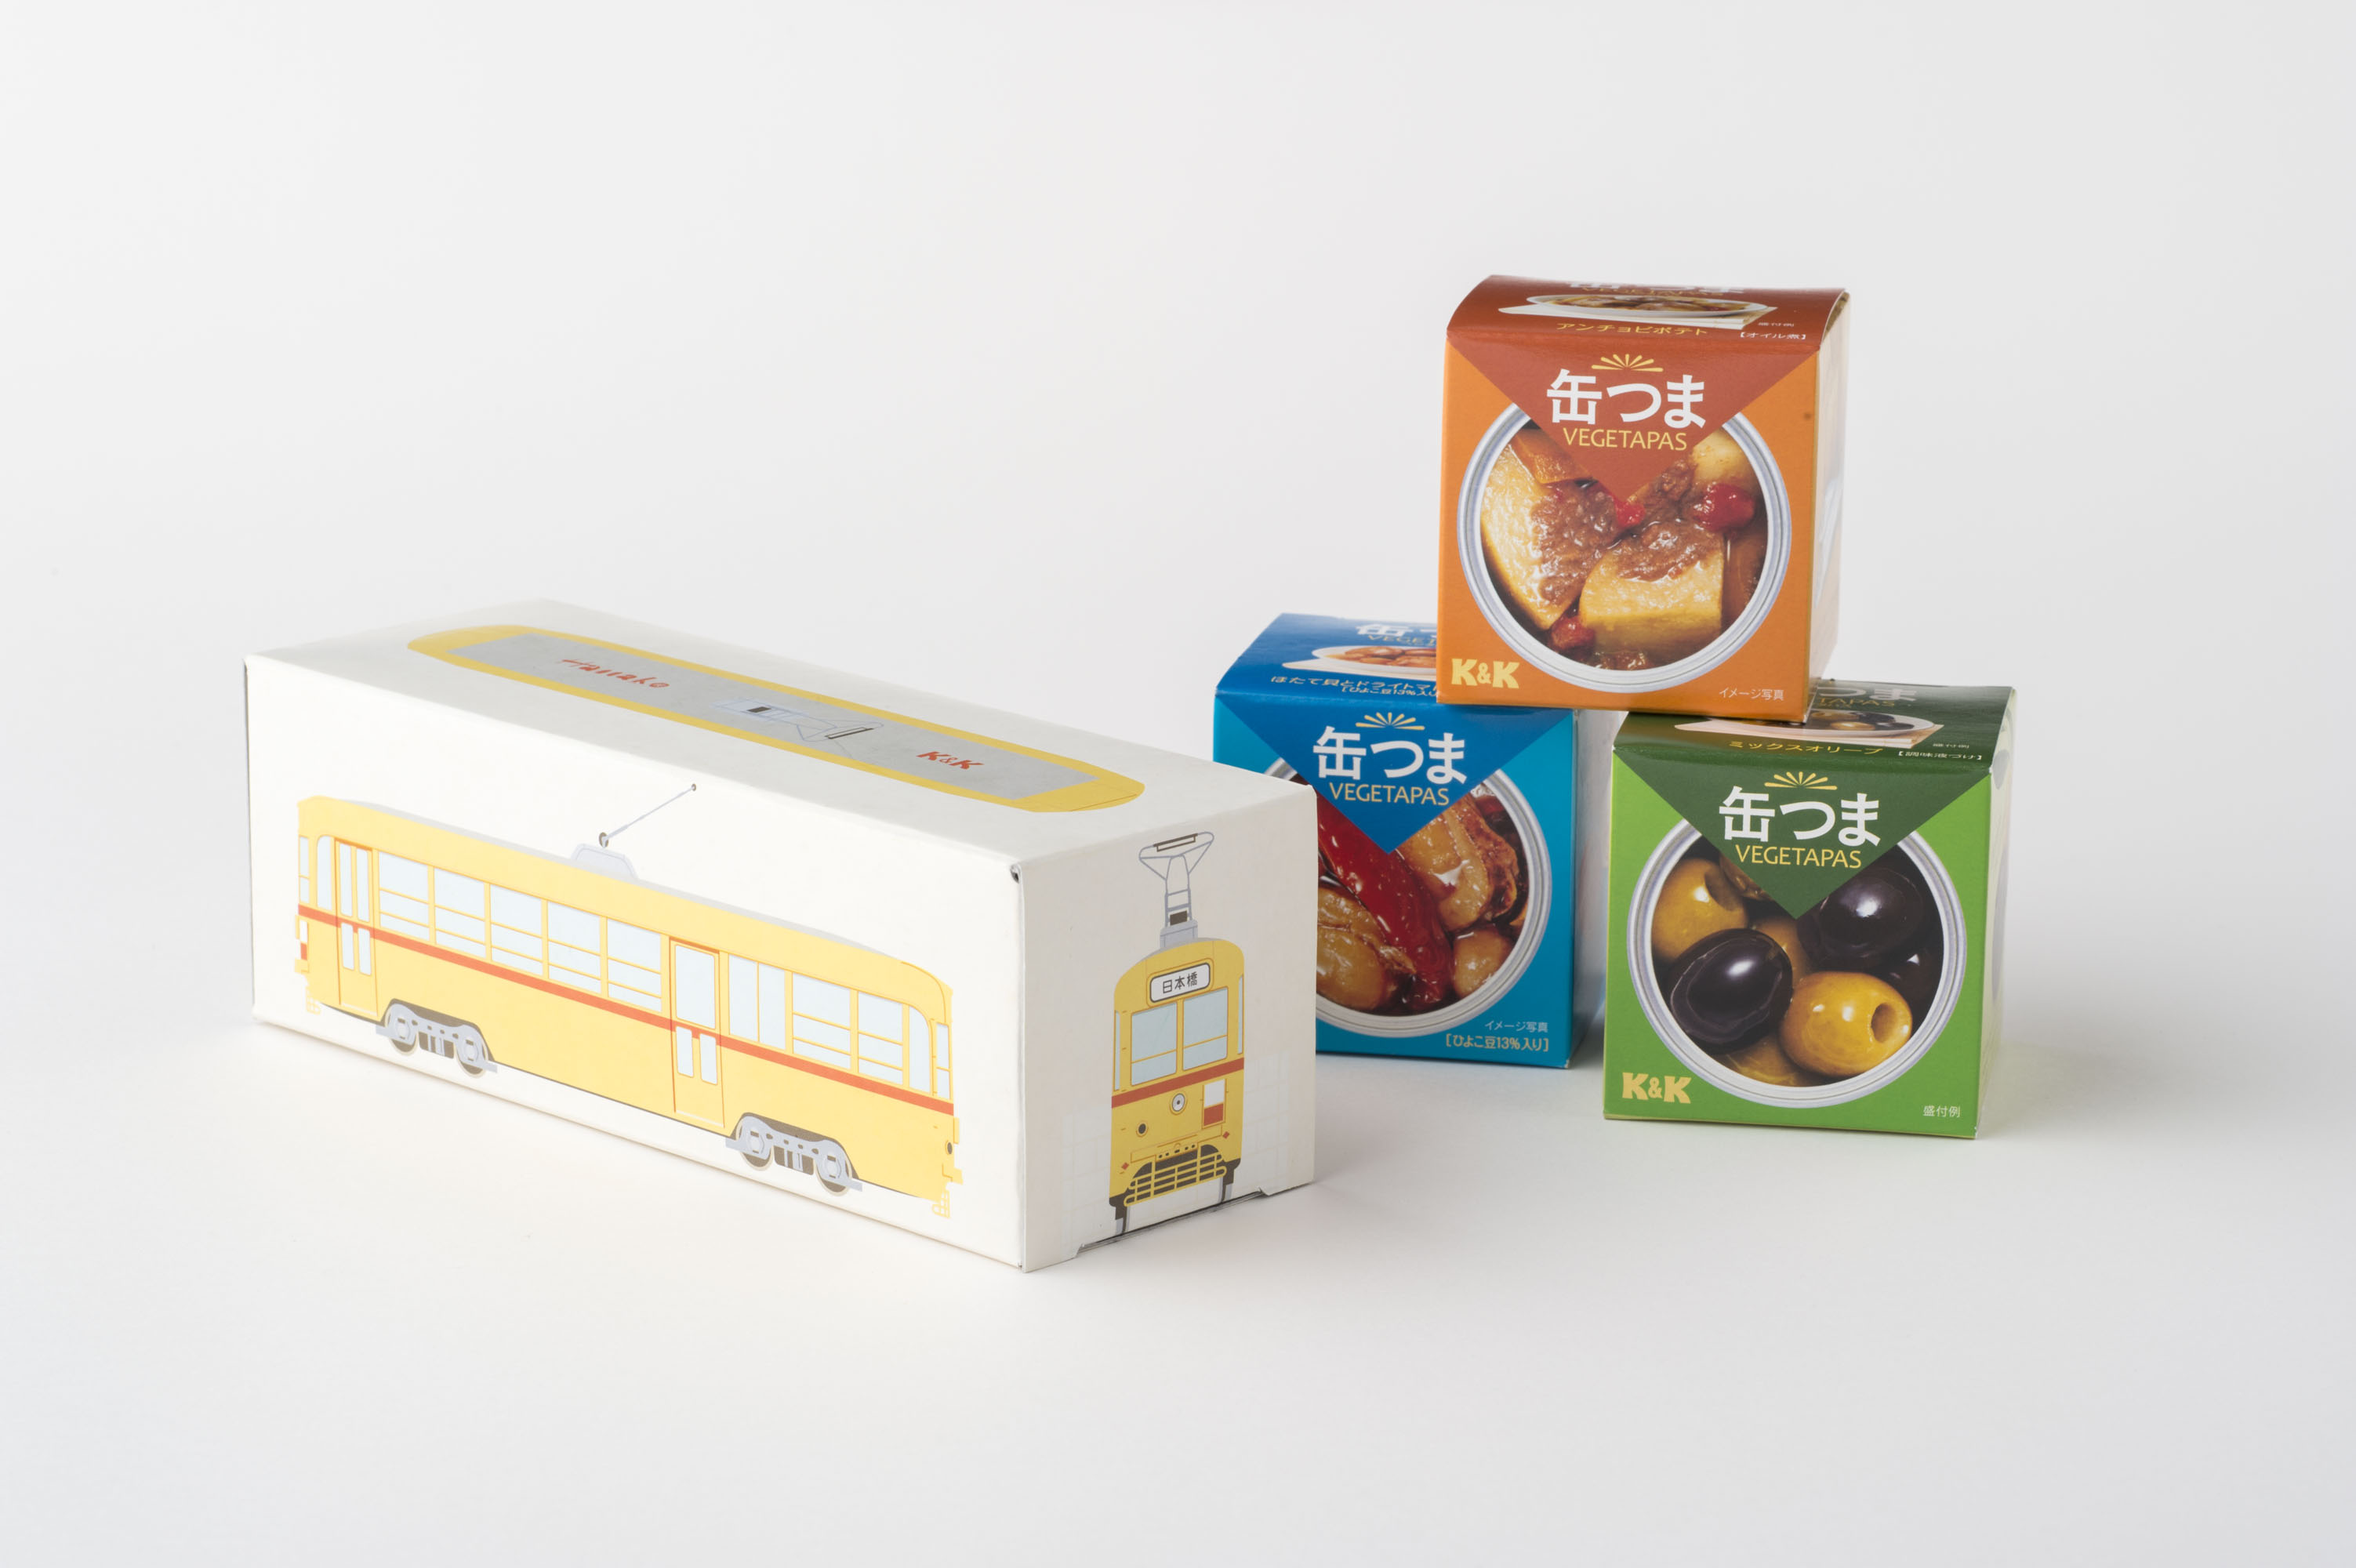 3缶買って特製BOXをゲット！〈ROJI日本橋〉の「缶つまベジタパス